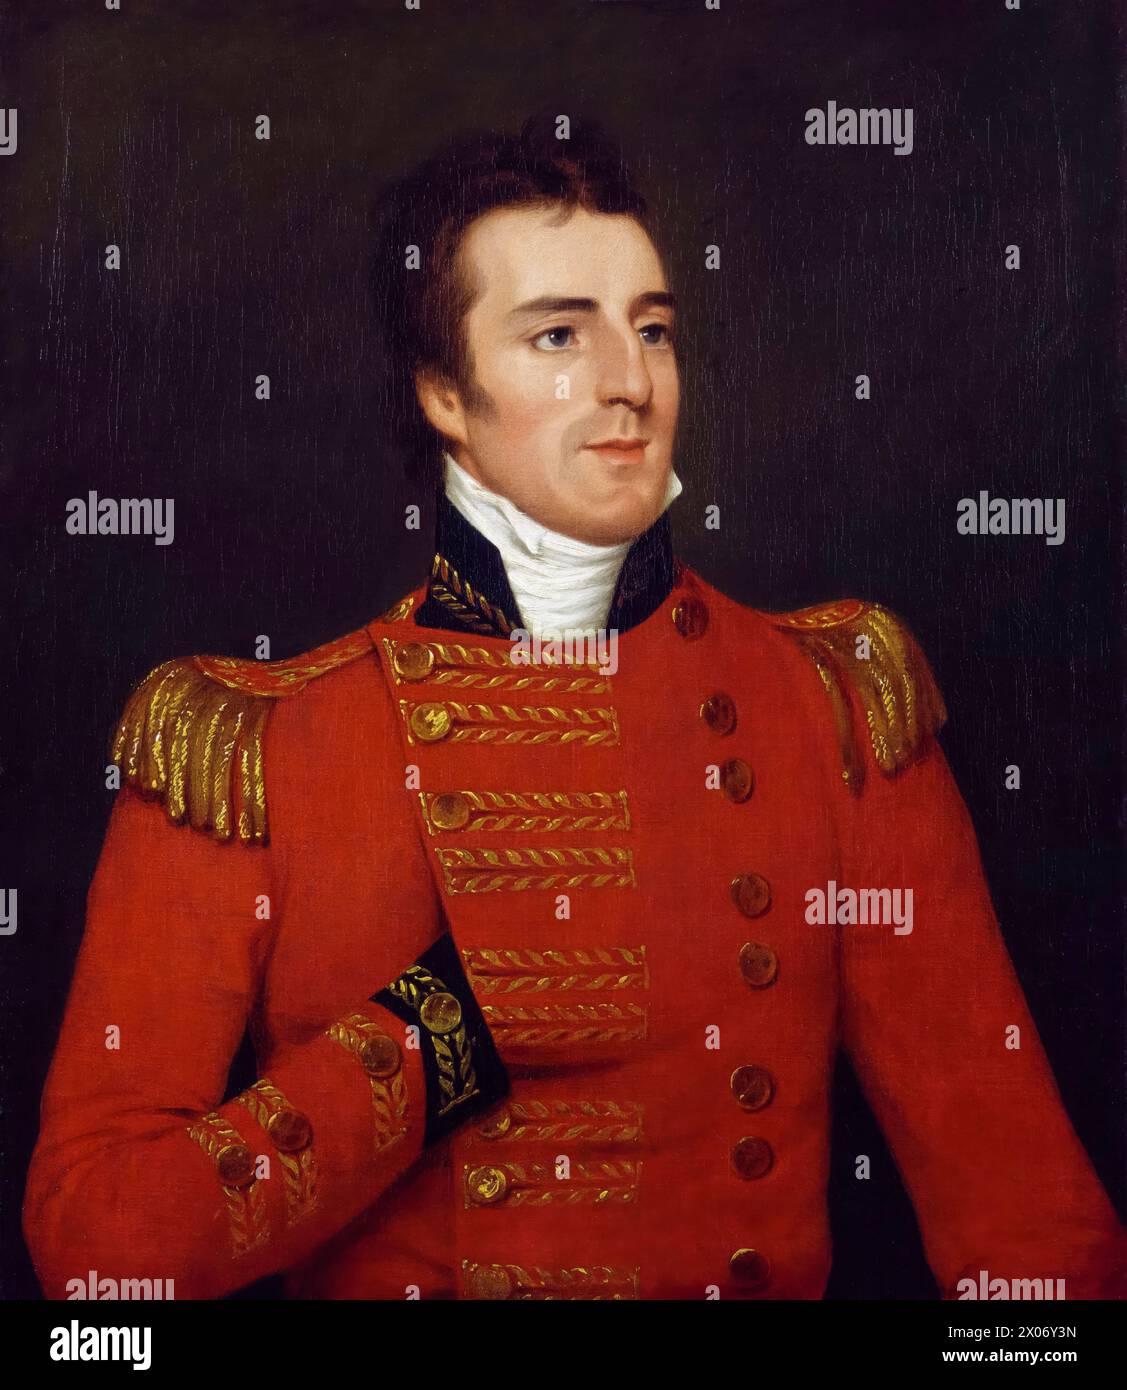 Arthur Wellesley, 1er duc de Wellington, (1769-1852), portrait peint à l'huile sur toile par Robert Home, 1804 Banque D'Images